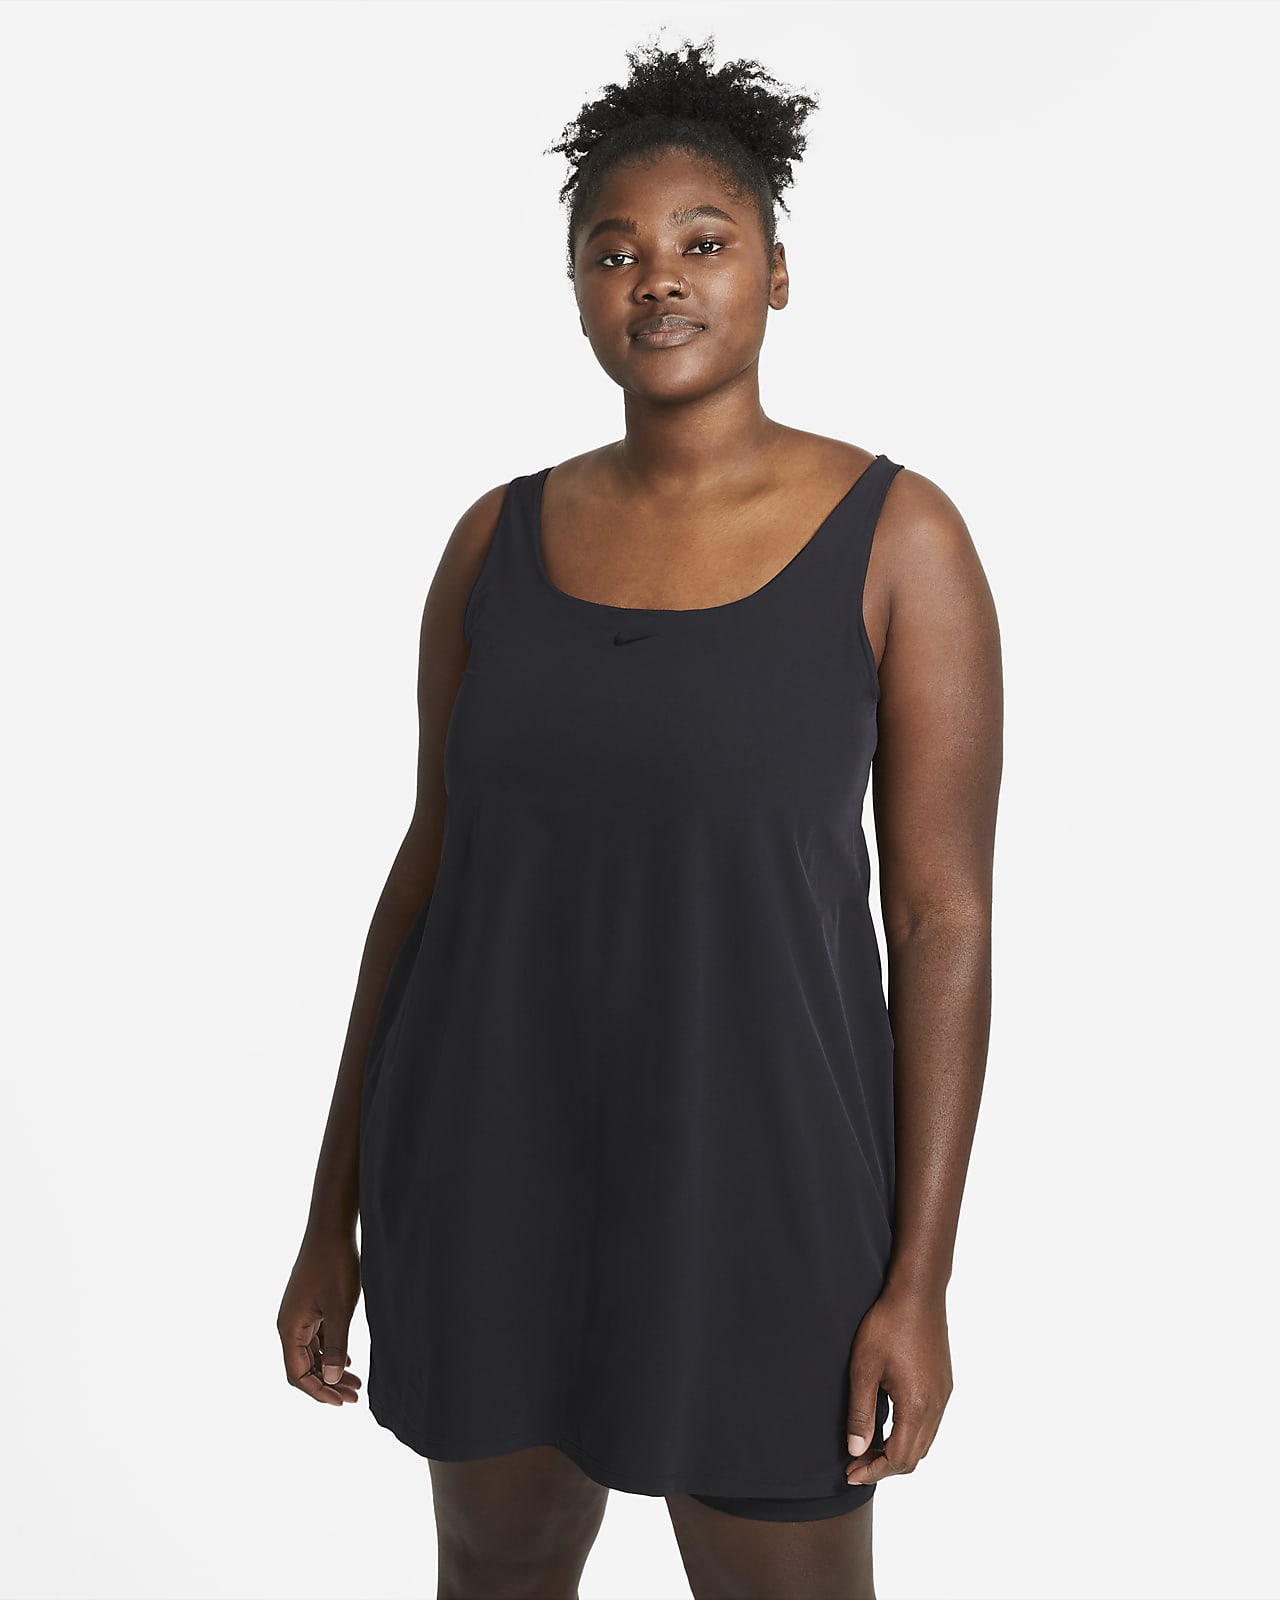 Nike Bliss Luxe Women's Training Dress (Plus Size)